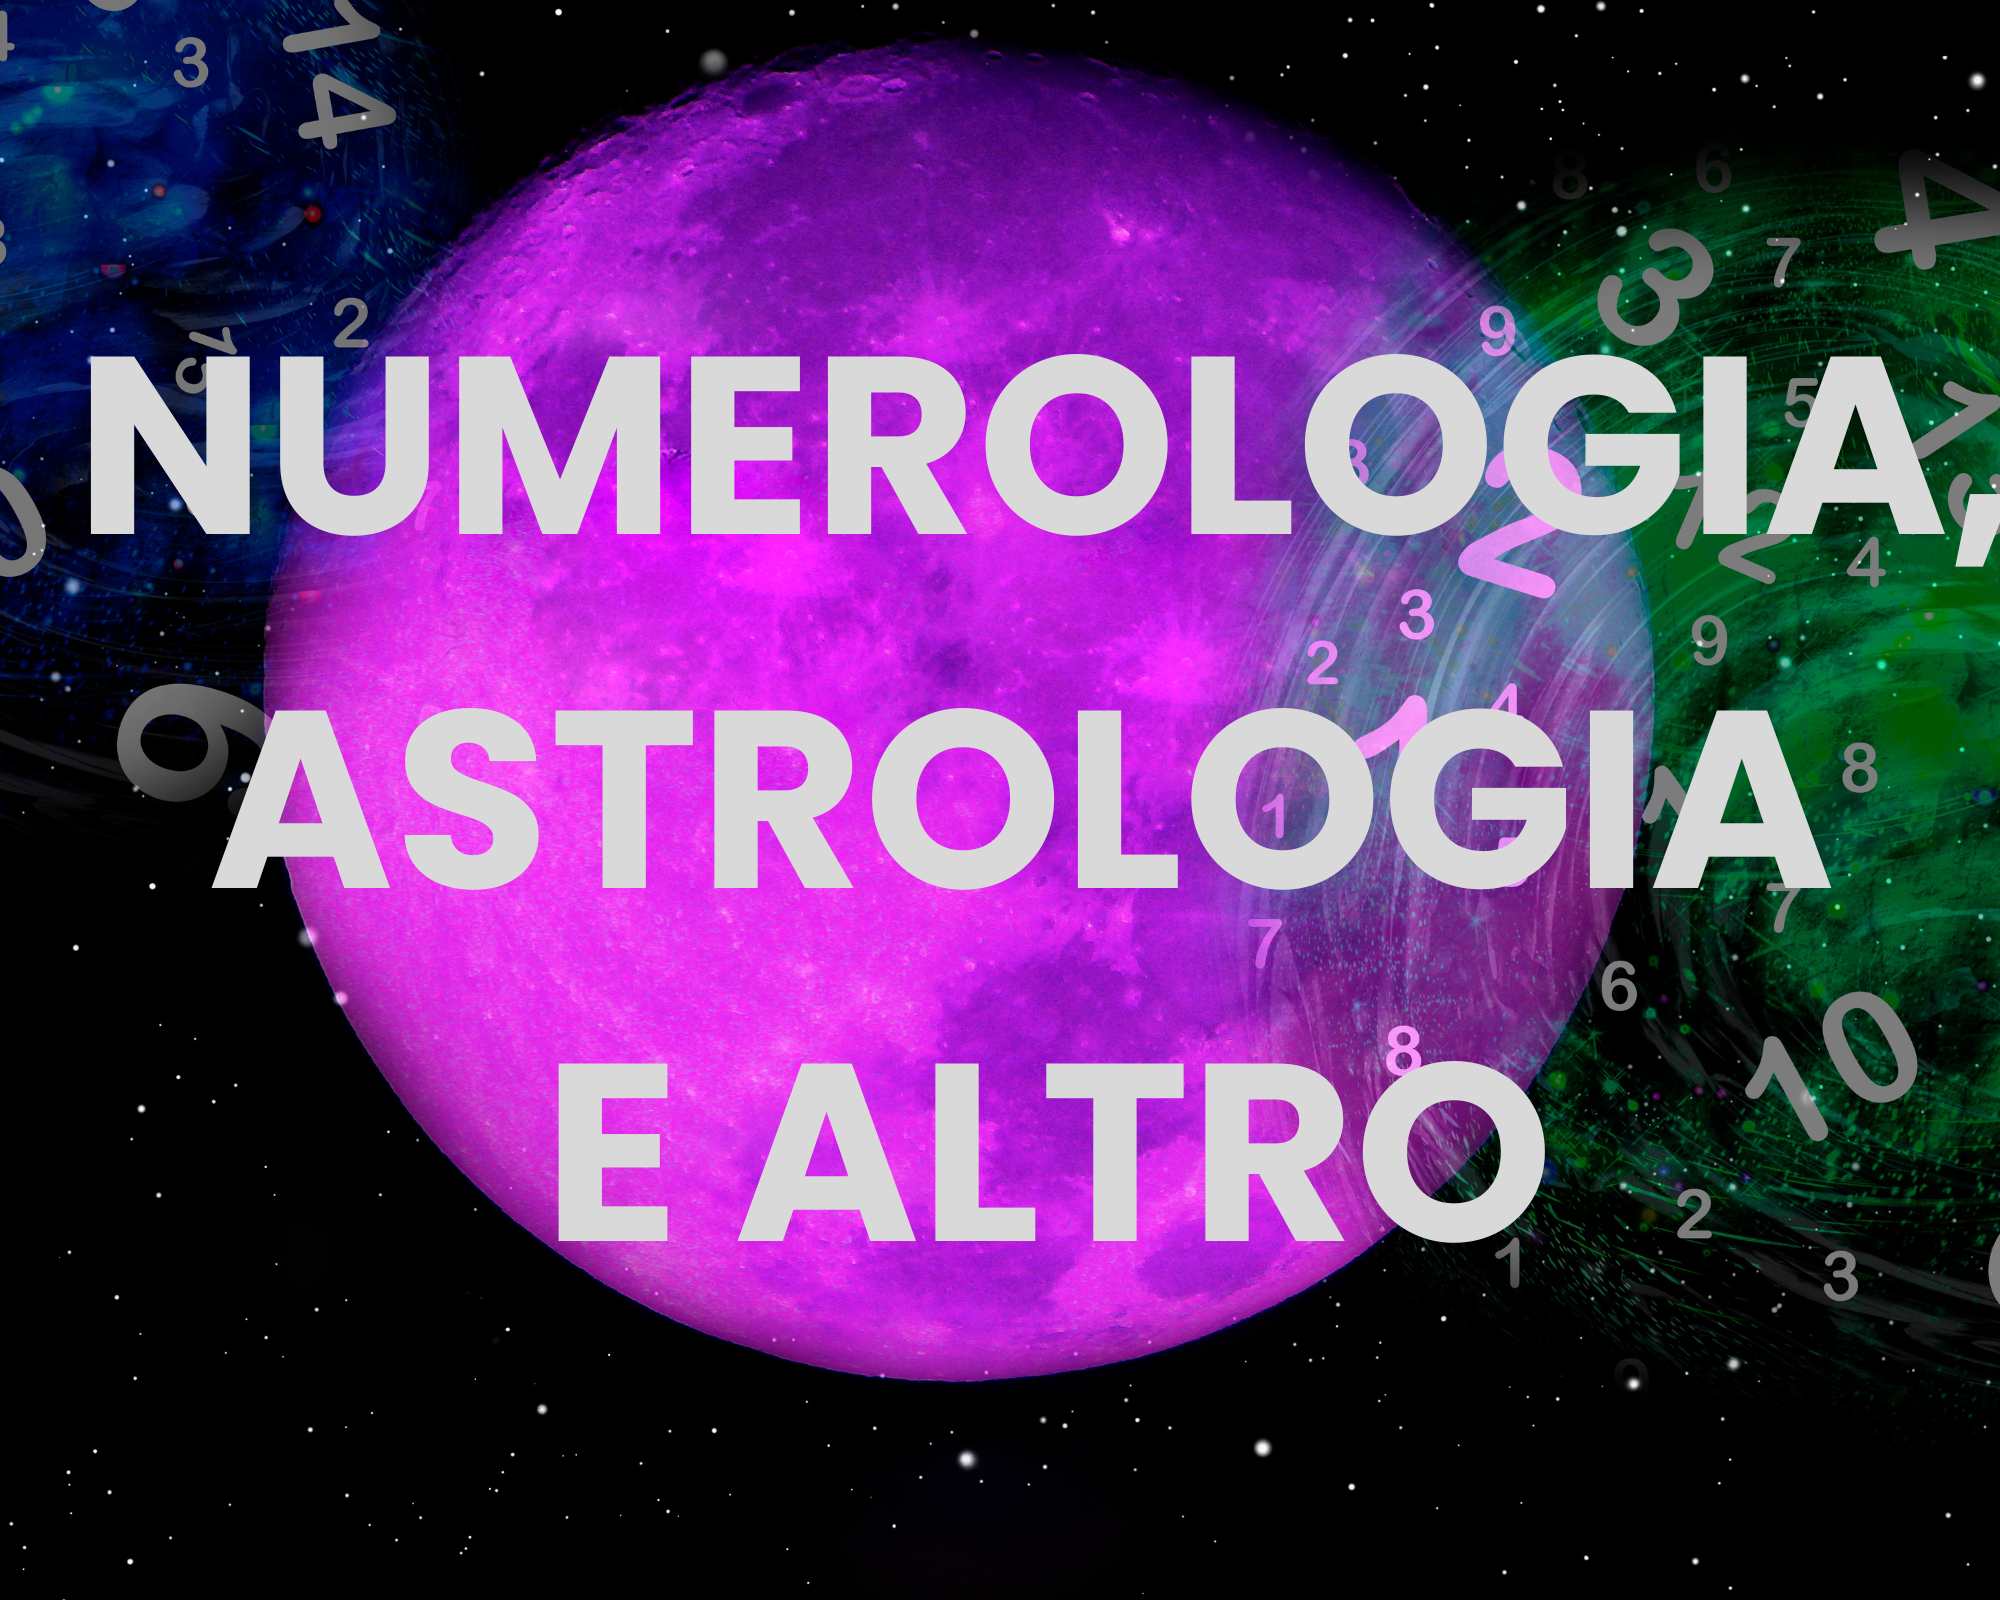 Numerologia, astrologia e altro